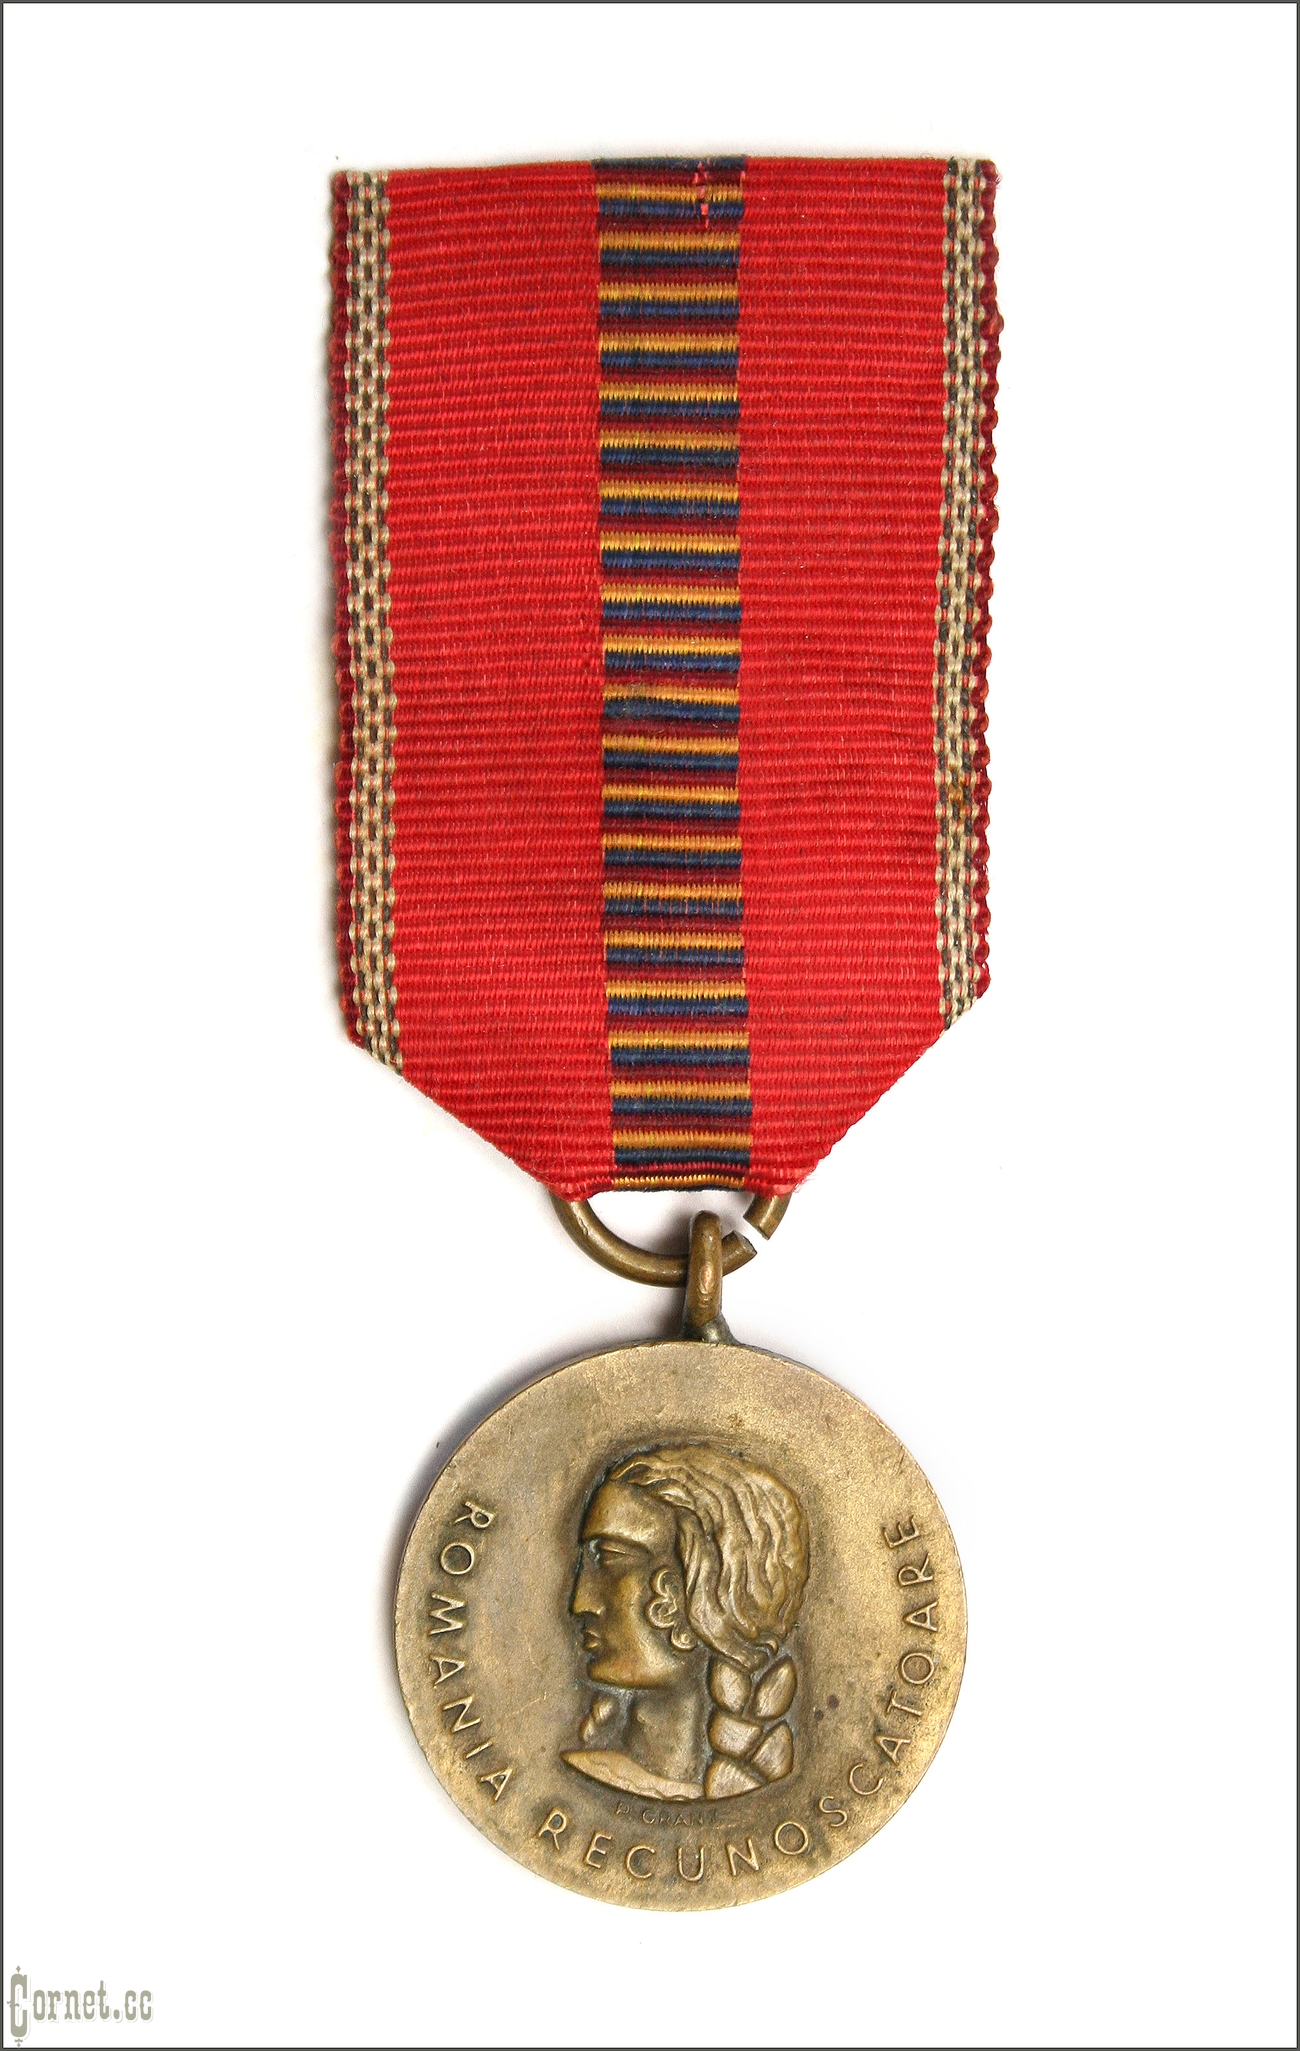 Romania. Medal "Crusade against Communism"